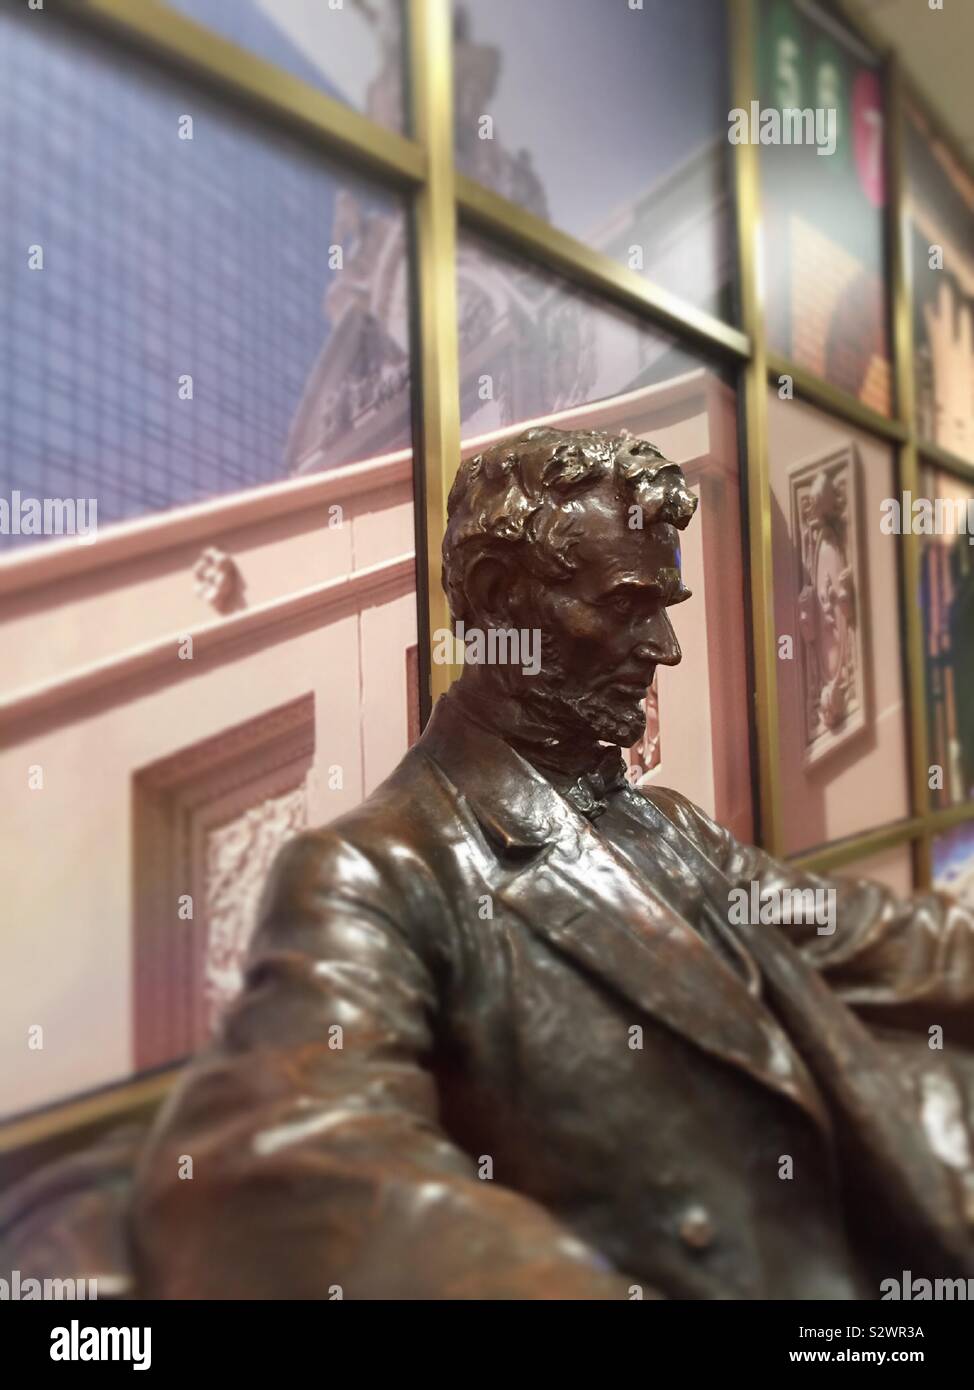 Petite statue d'Abraham Lincoln à la réception d'un grand hall central Place, NEW YORK, USA Banque D'Images